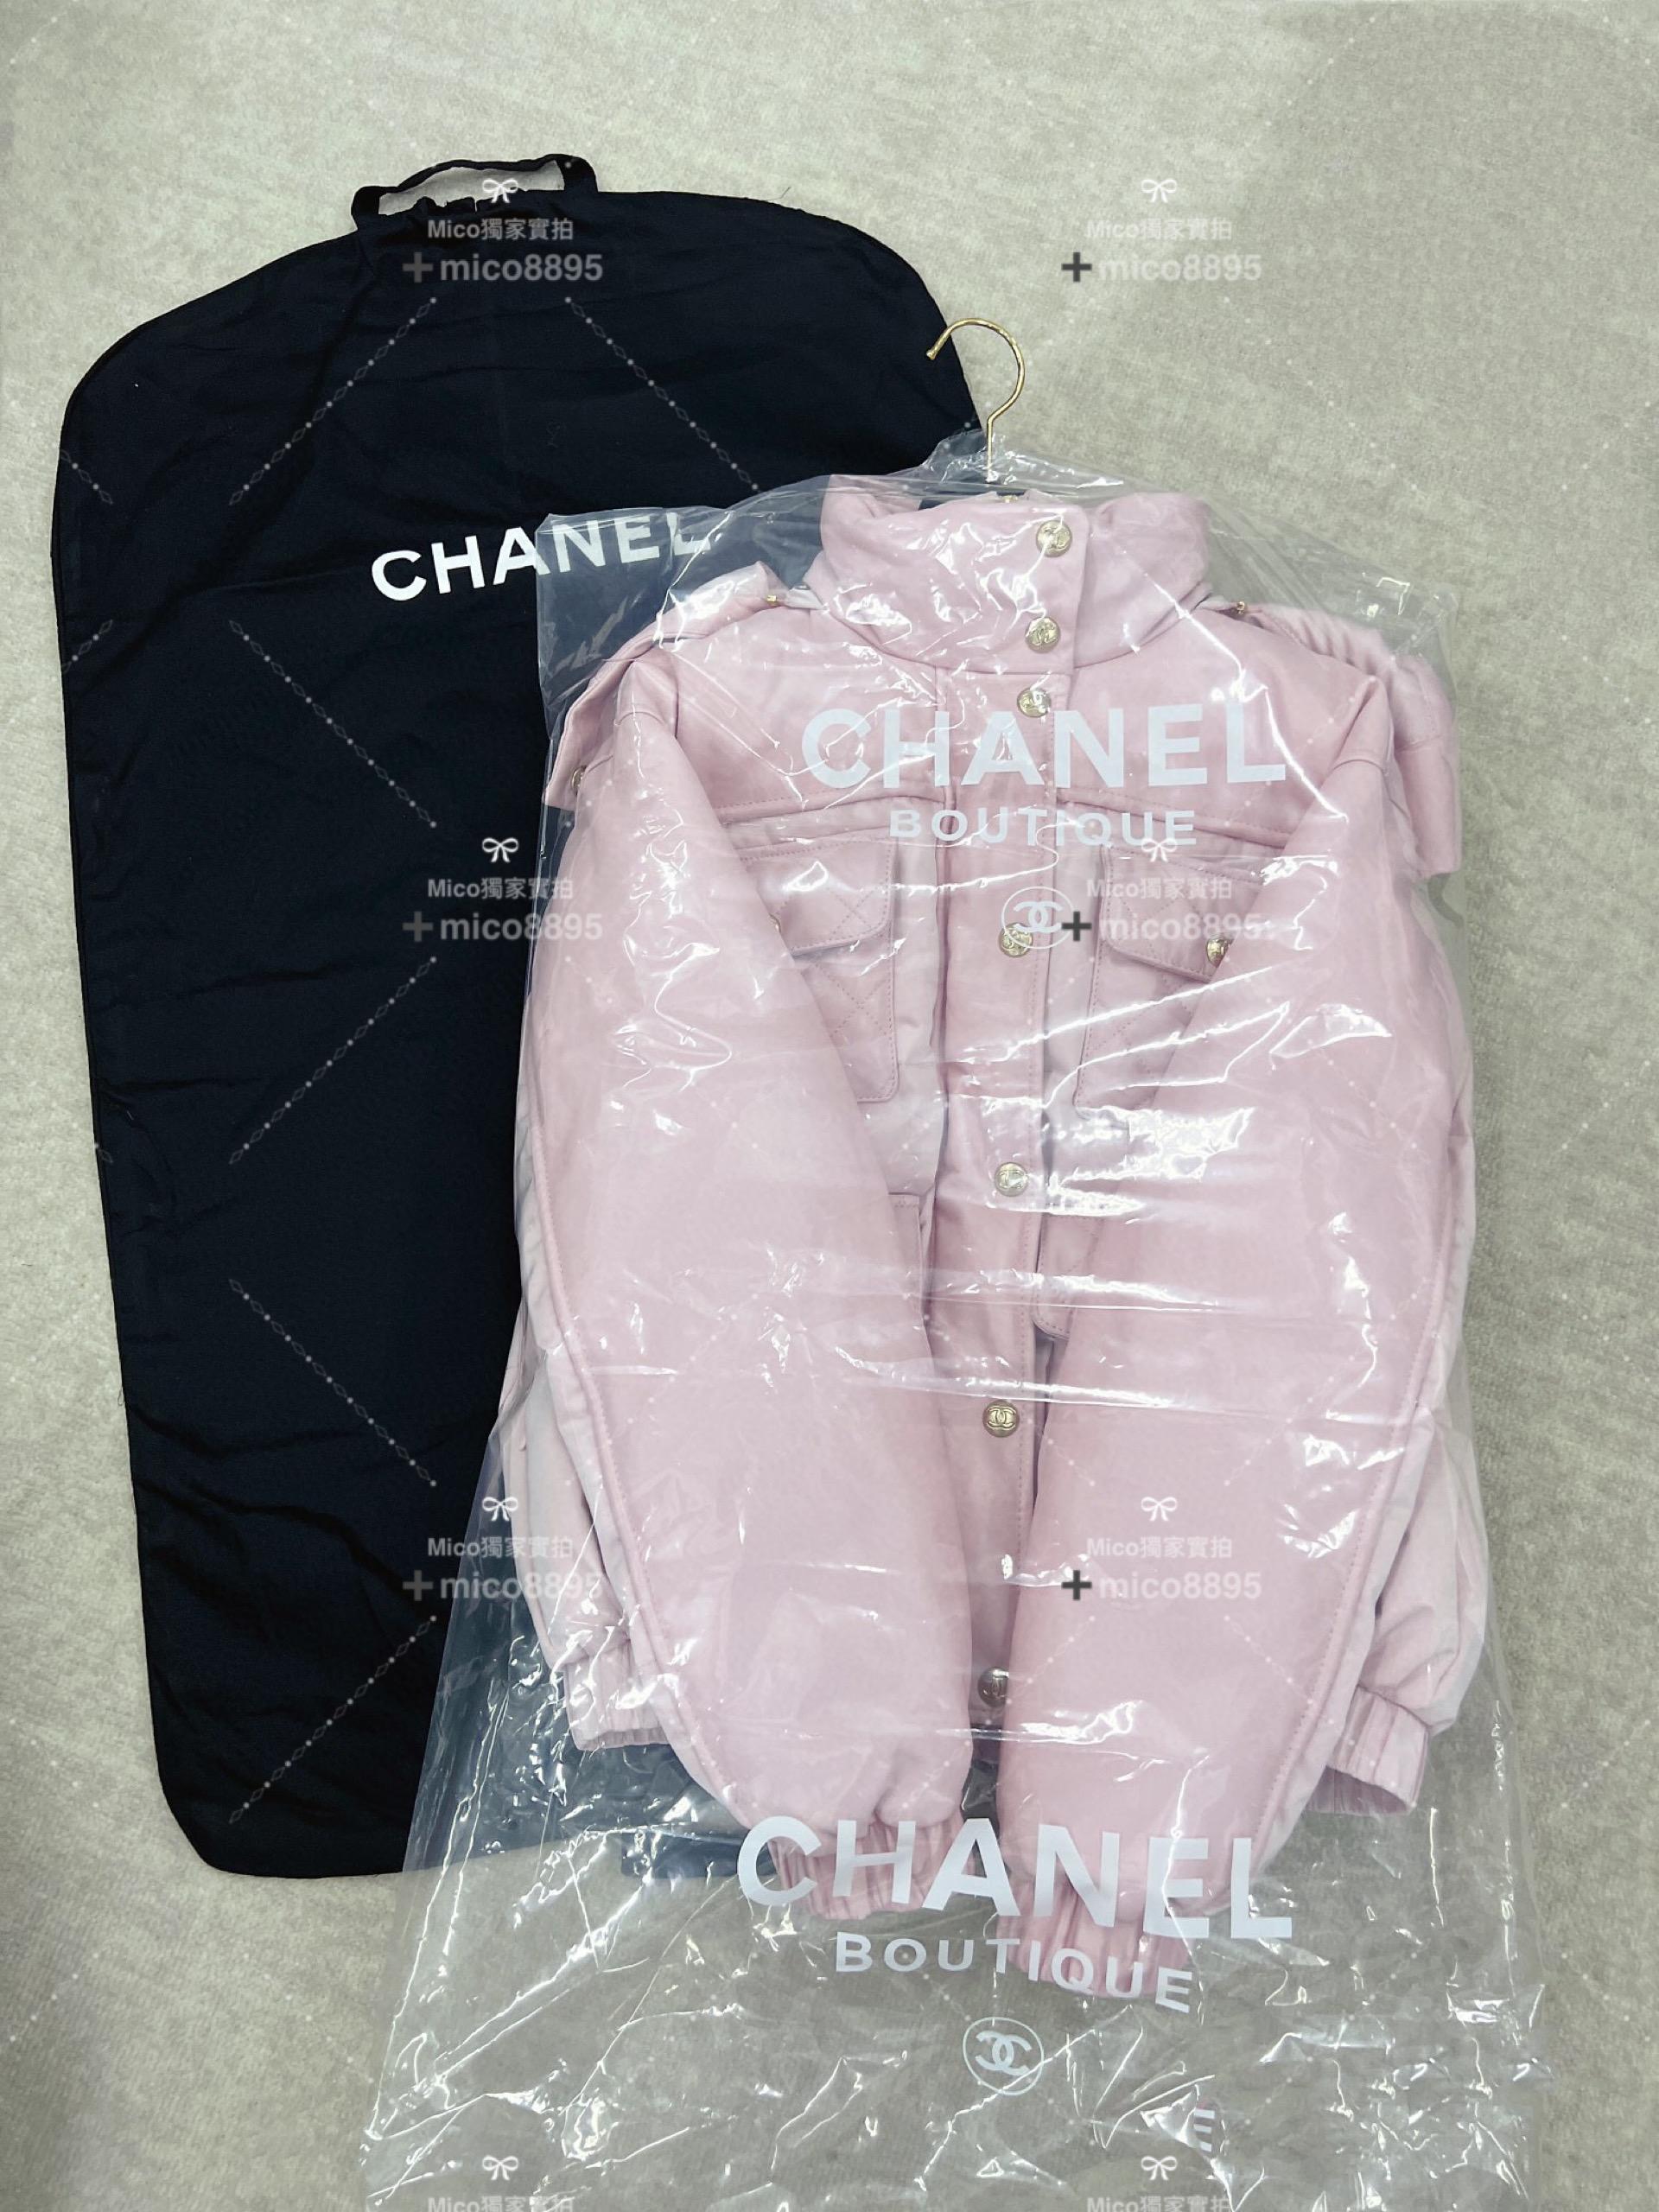 Chanel Coco Neige系列 綿羊皮羽絨服 粉色 尺碼36、38、40